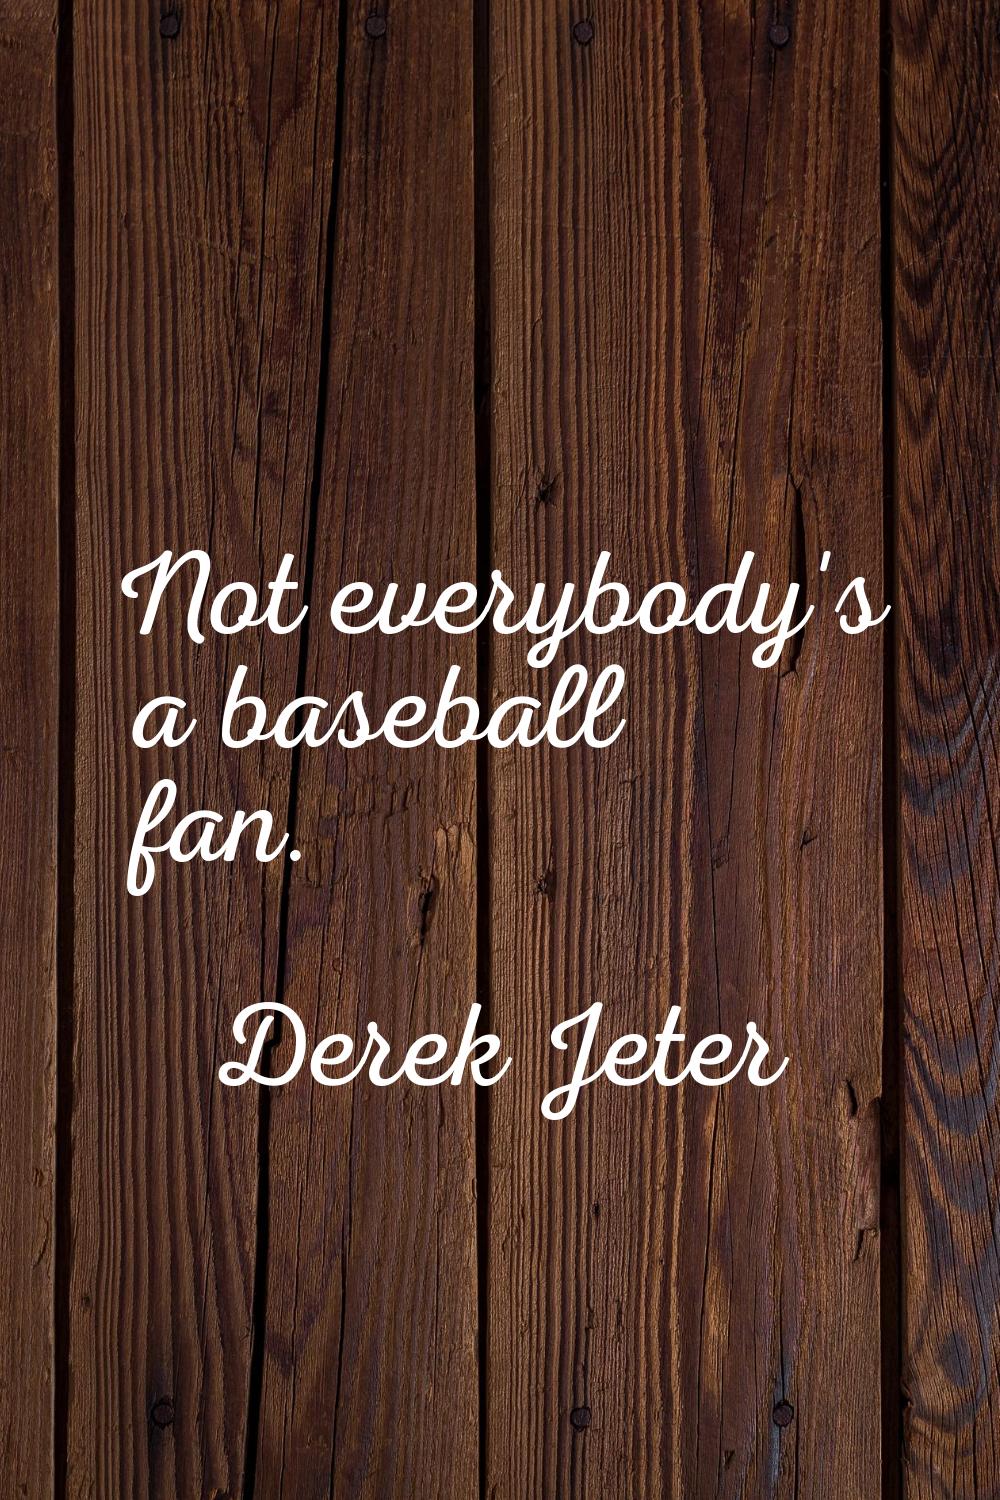 Not everybody's a baseball fan.